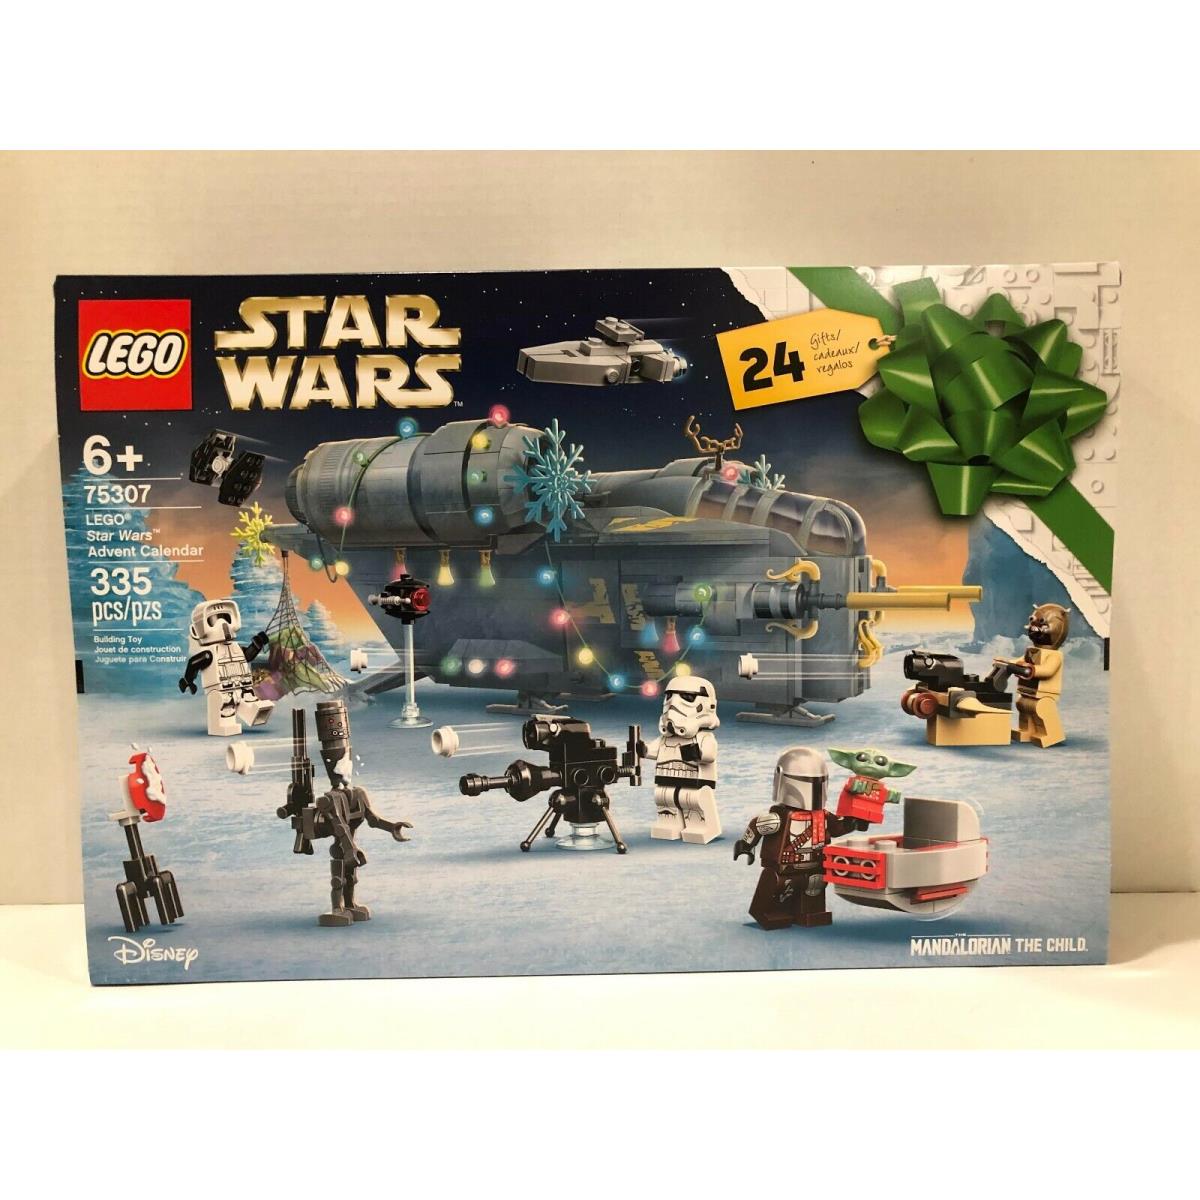 Lego Star Wars 2021 Advent Calendar 75307